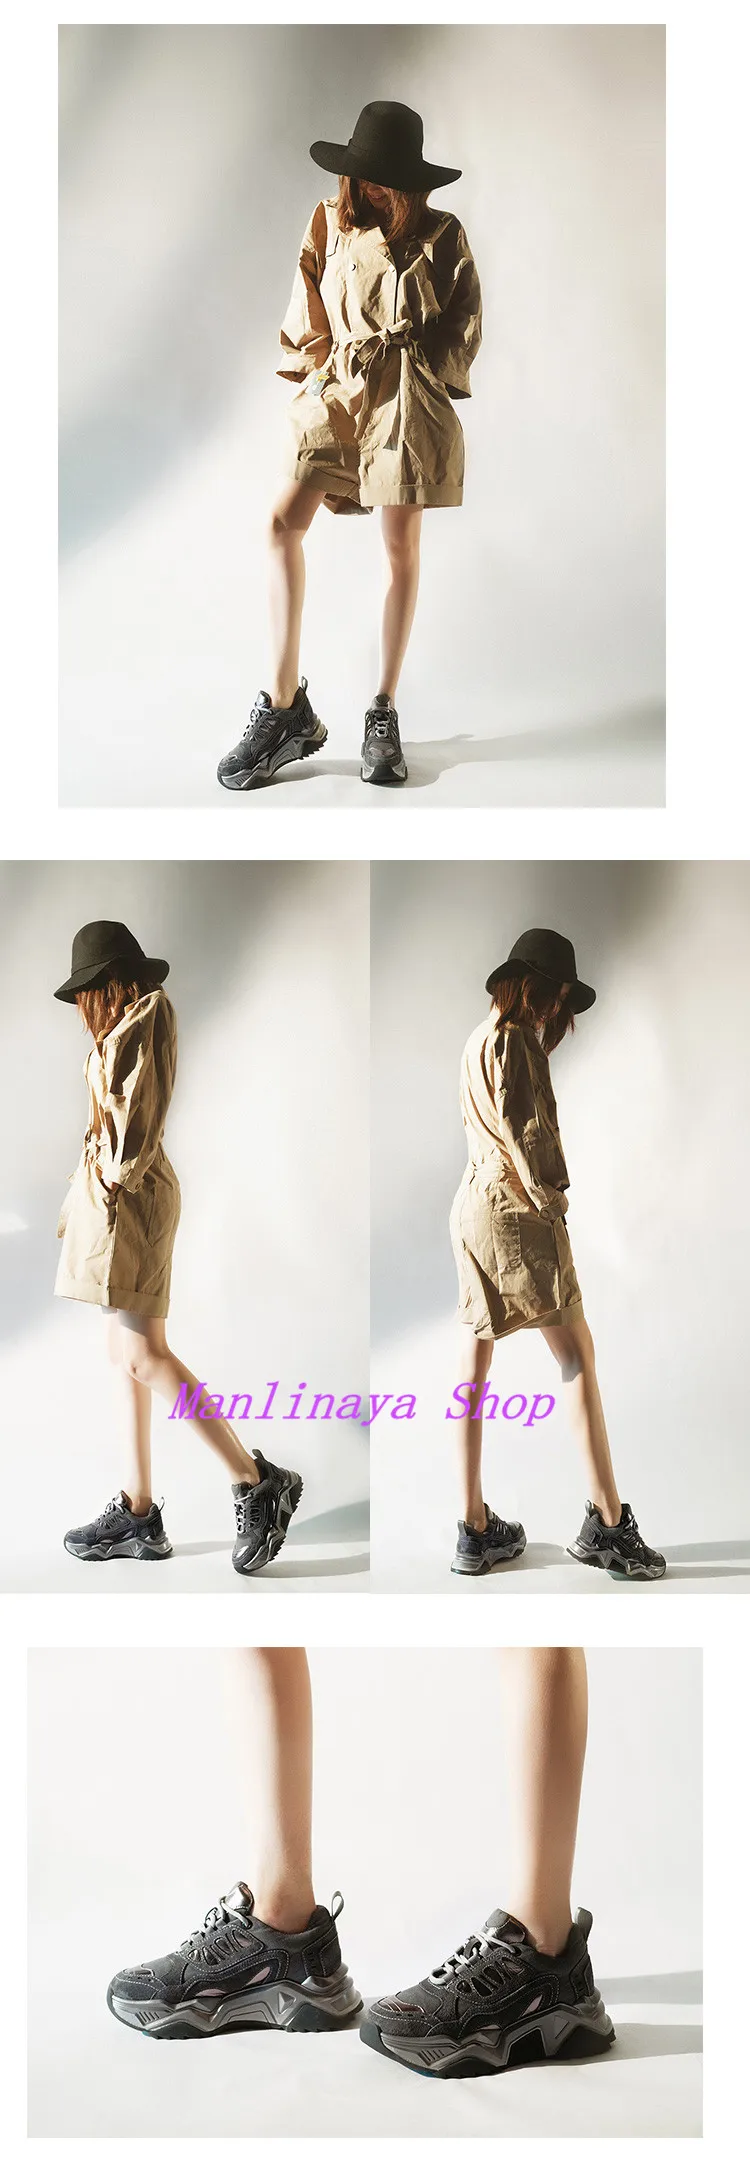 Manlinaya/Роскошные дизайнерские женские кроссовки на платформе; шикарные женские кроссовки из коровьей замши на толстом каблуке; Ins; Лидер продаж; кроссовки на шнуровке